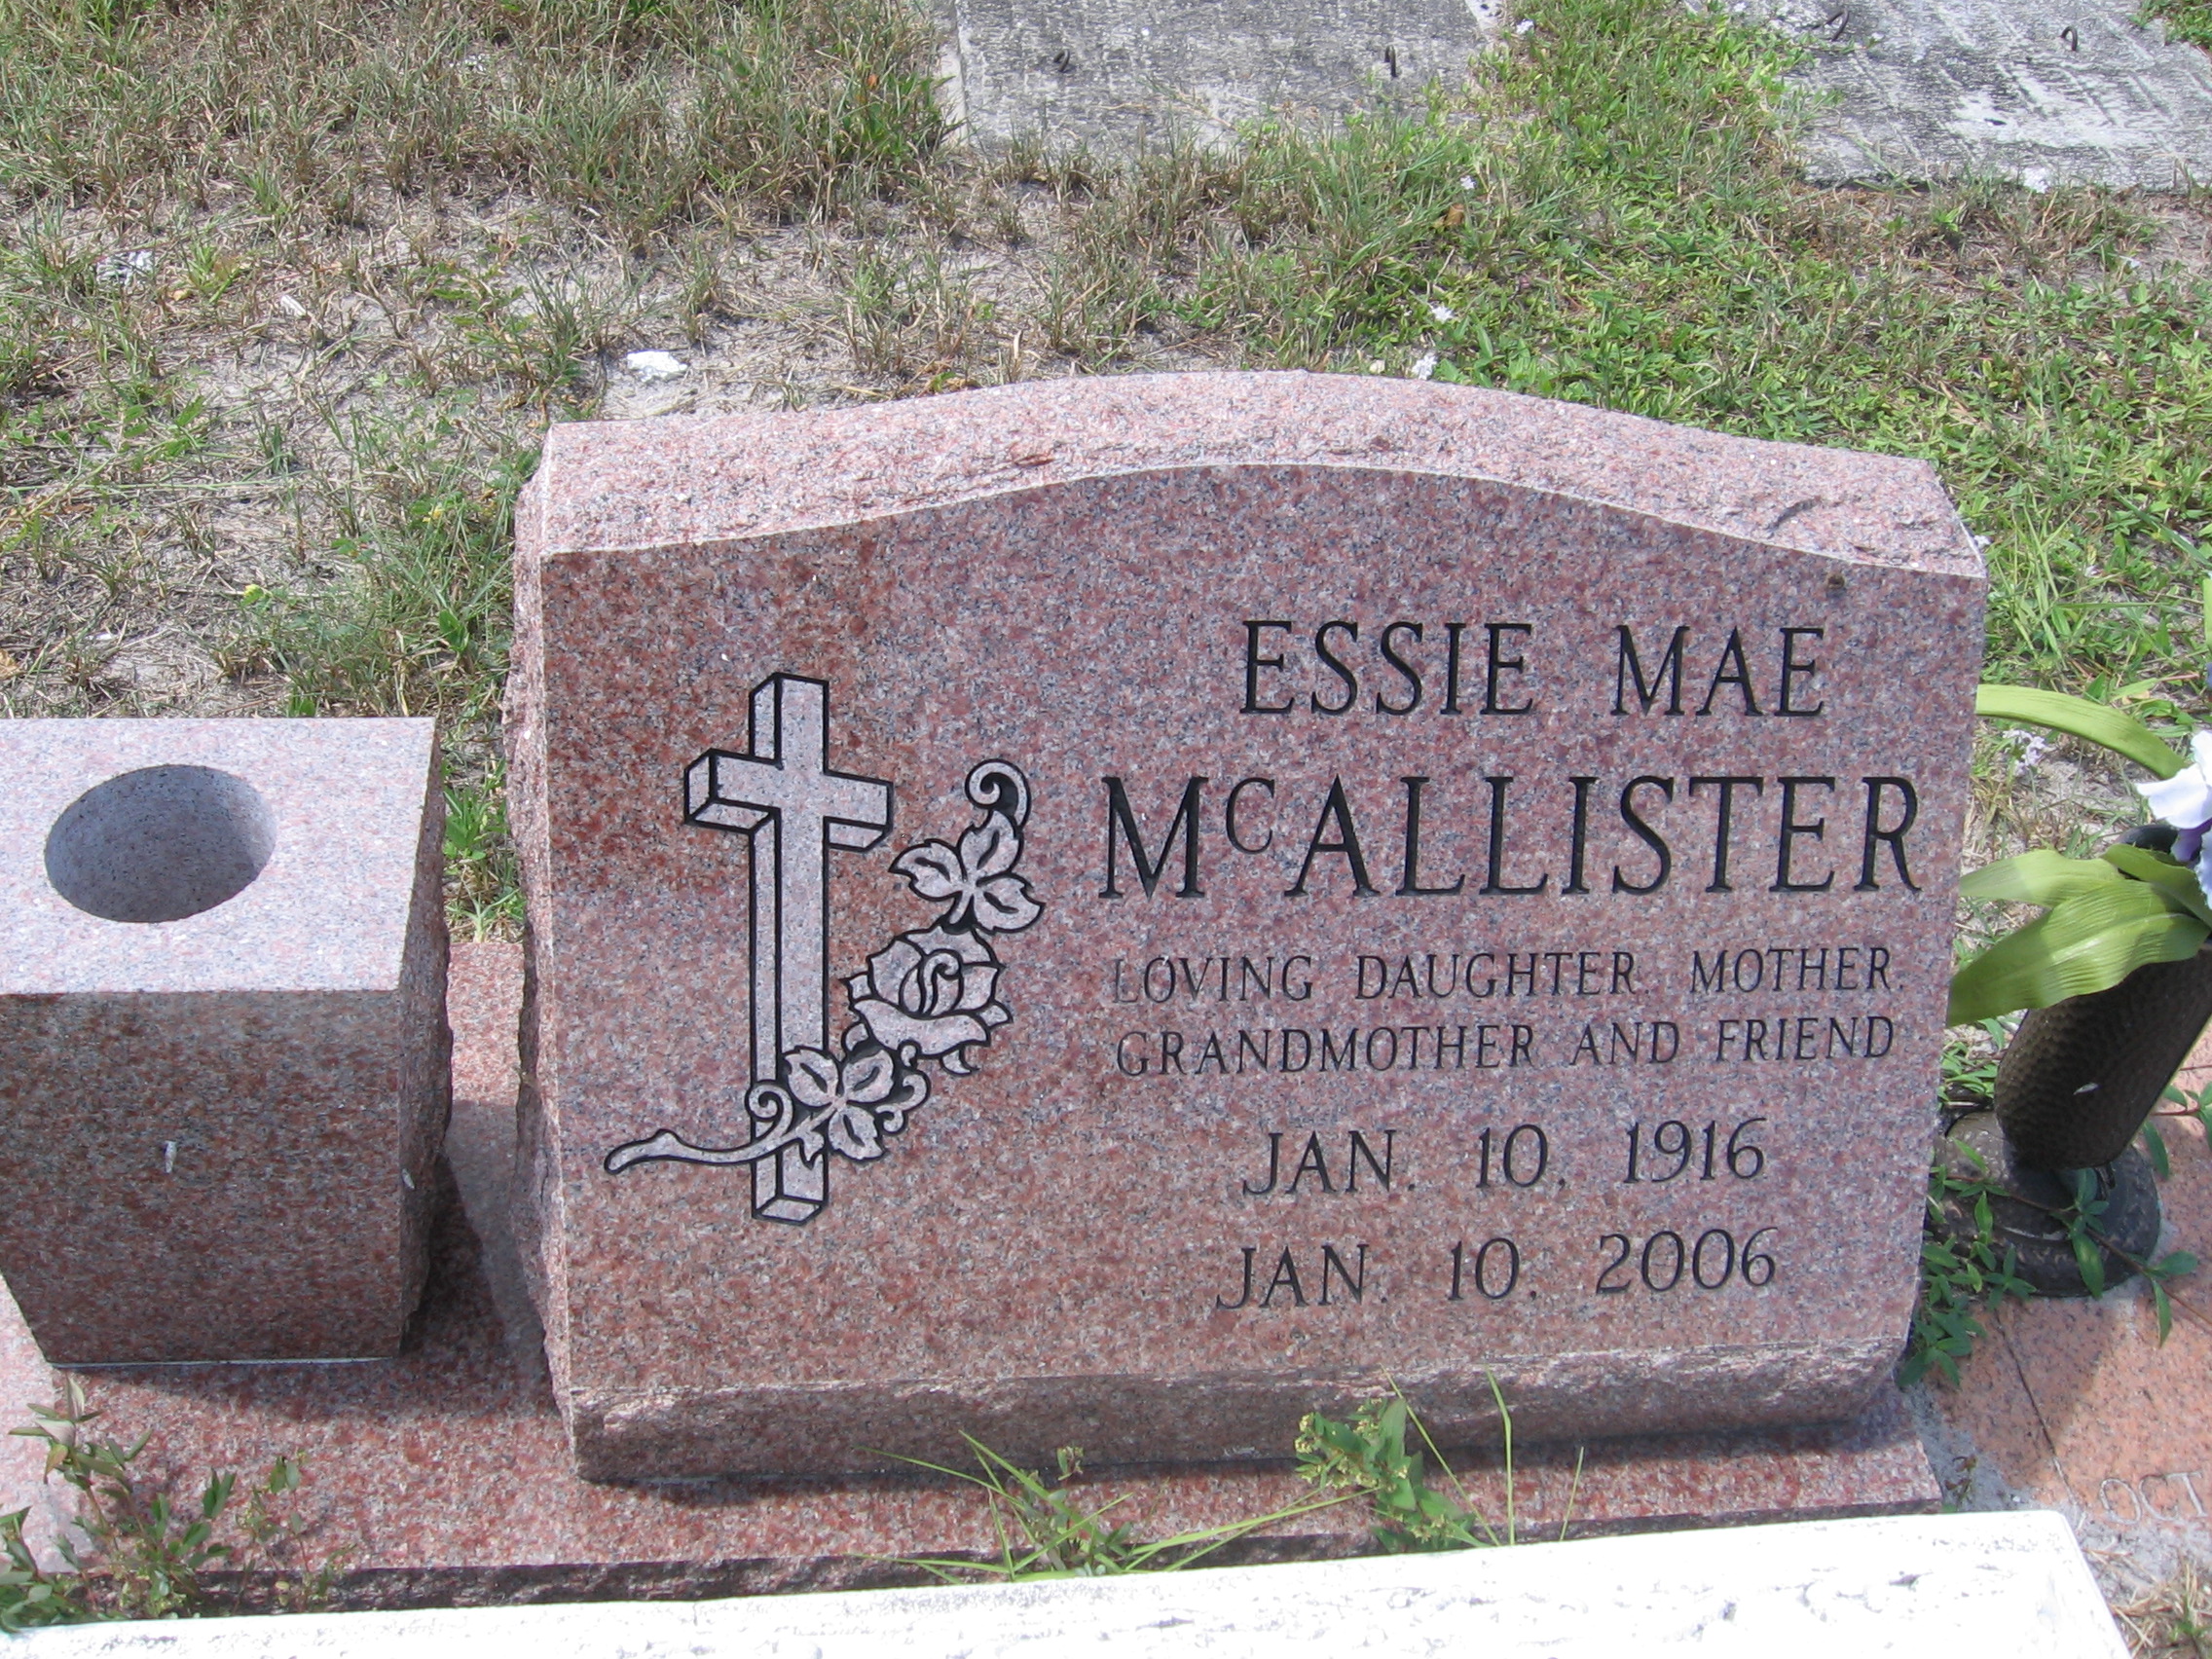 Essie Mae McAllister